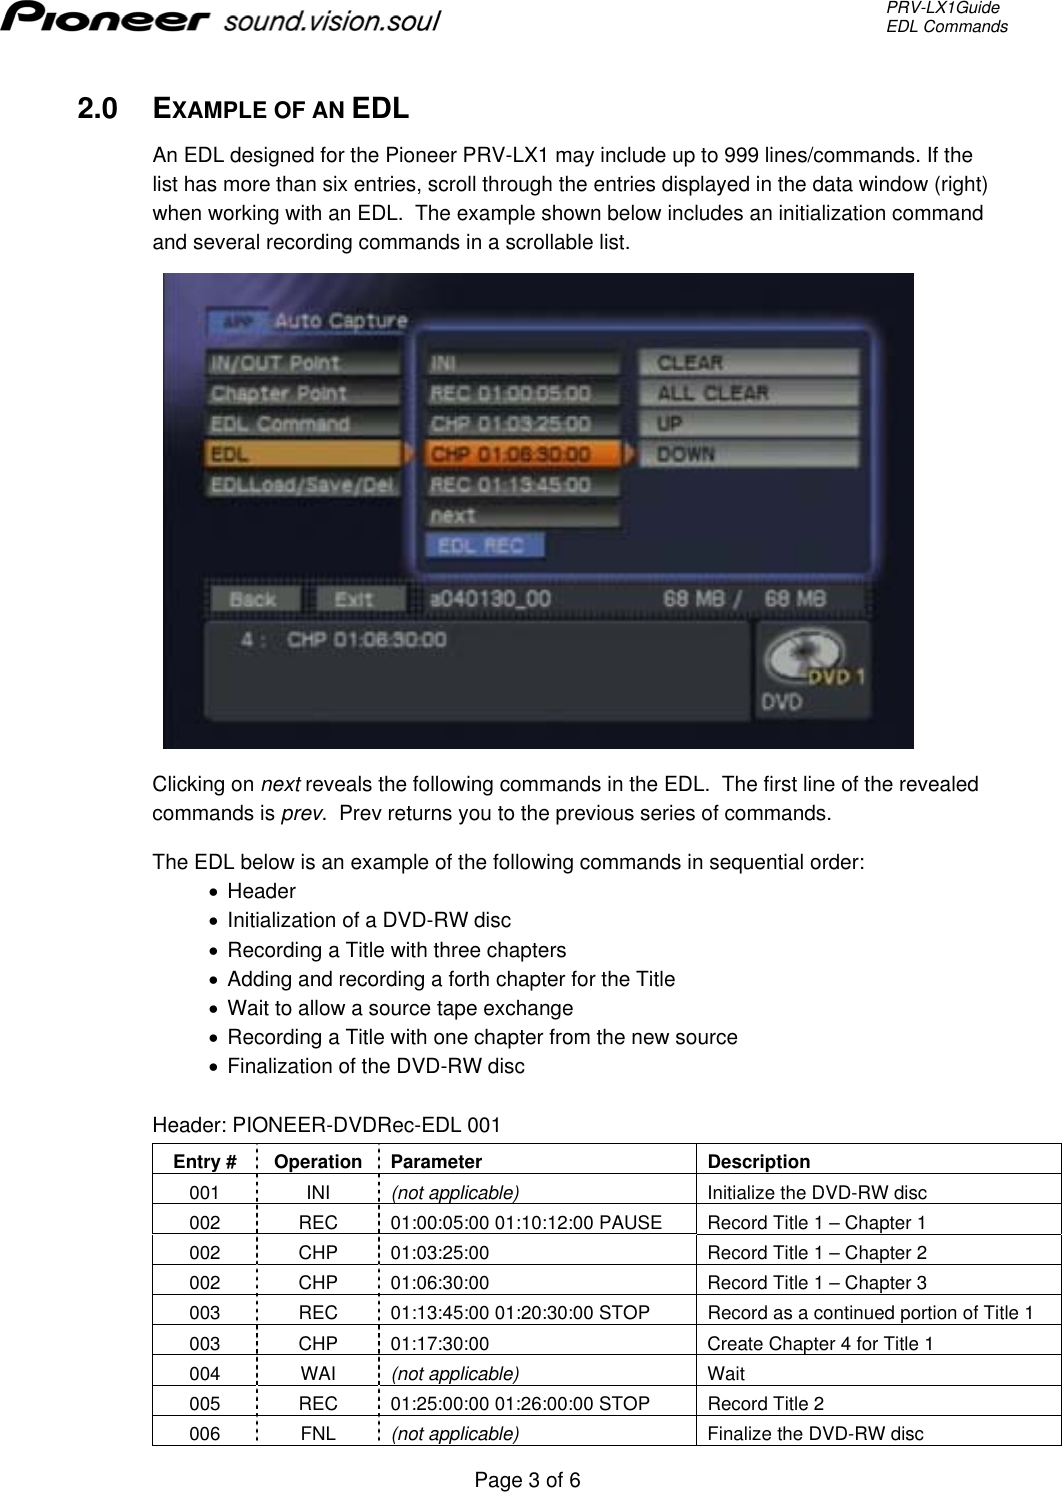 Page 3 of 6 - Pioneer Pioneer-T502202-Users-Manual- PRV-LX1 EDL Command Structure  Pioneer-t502202-users-manual